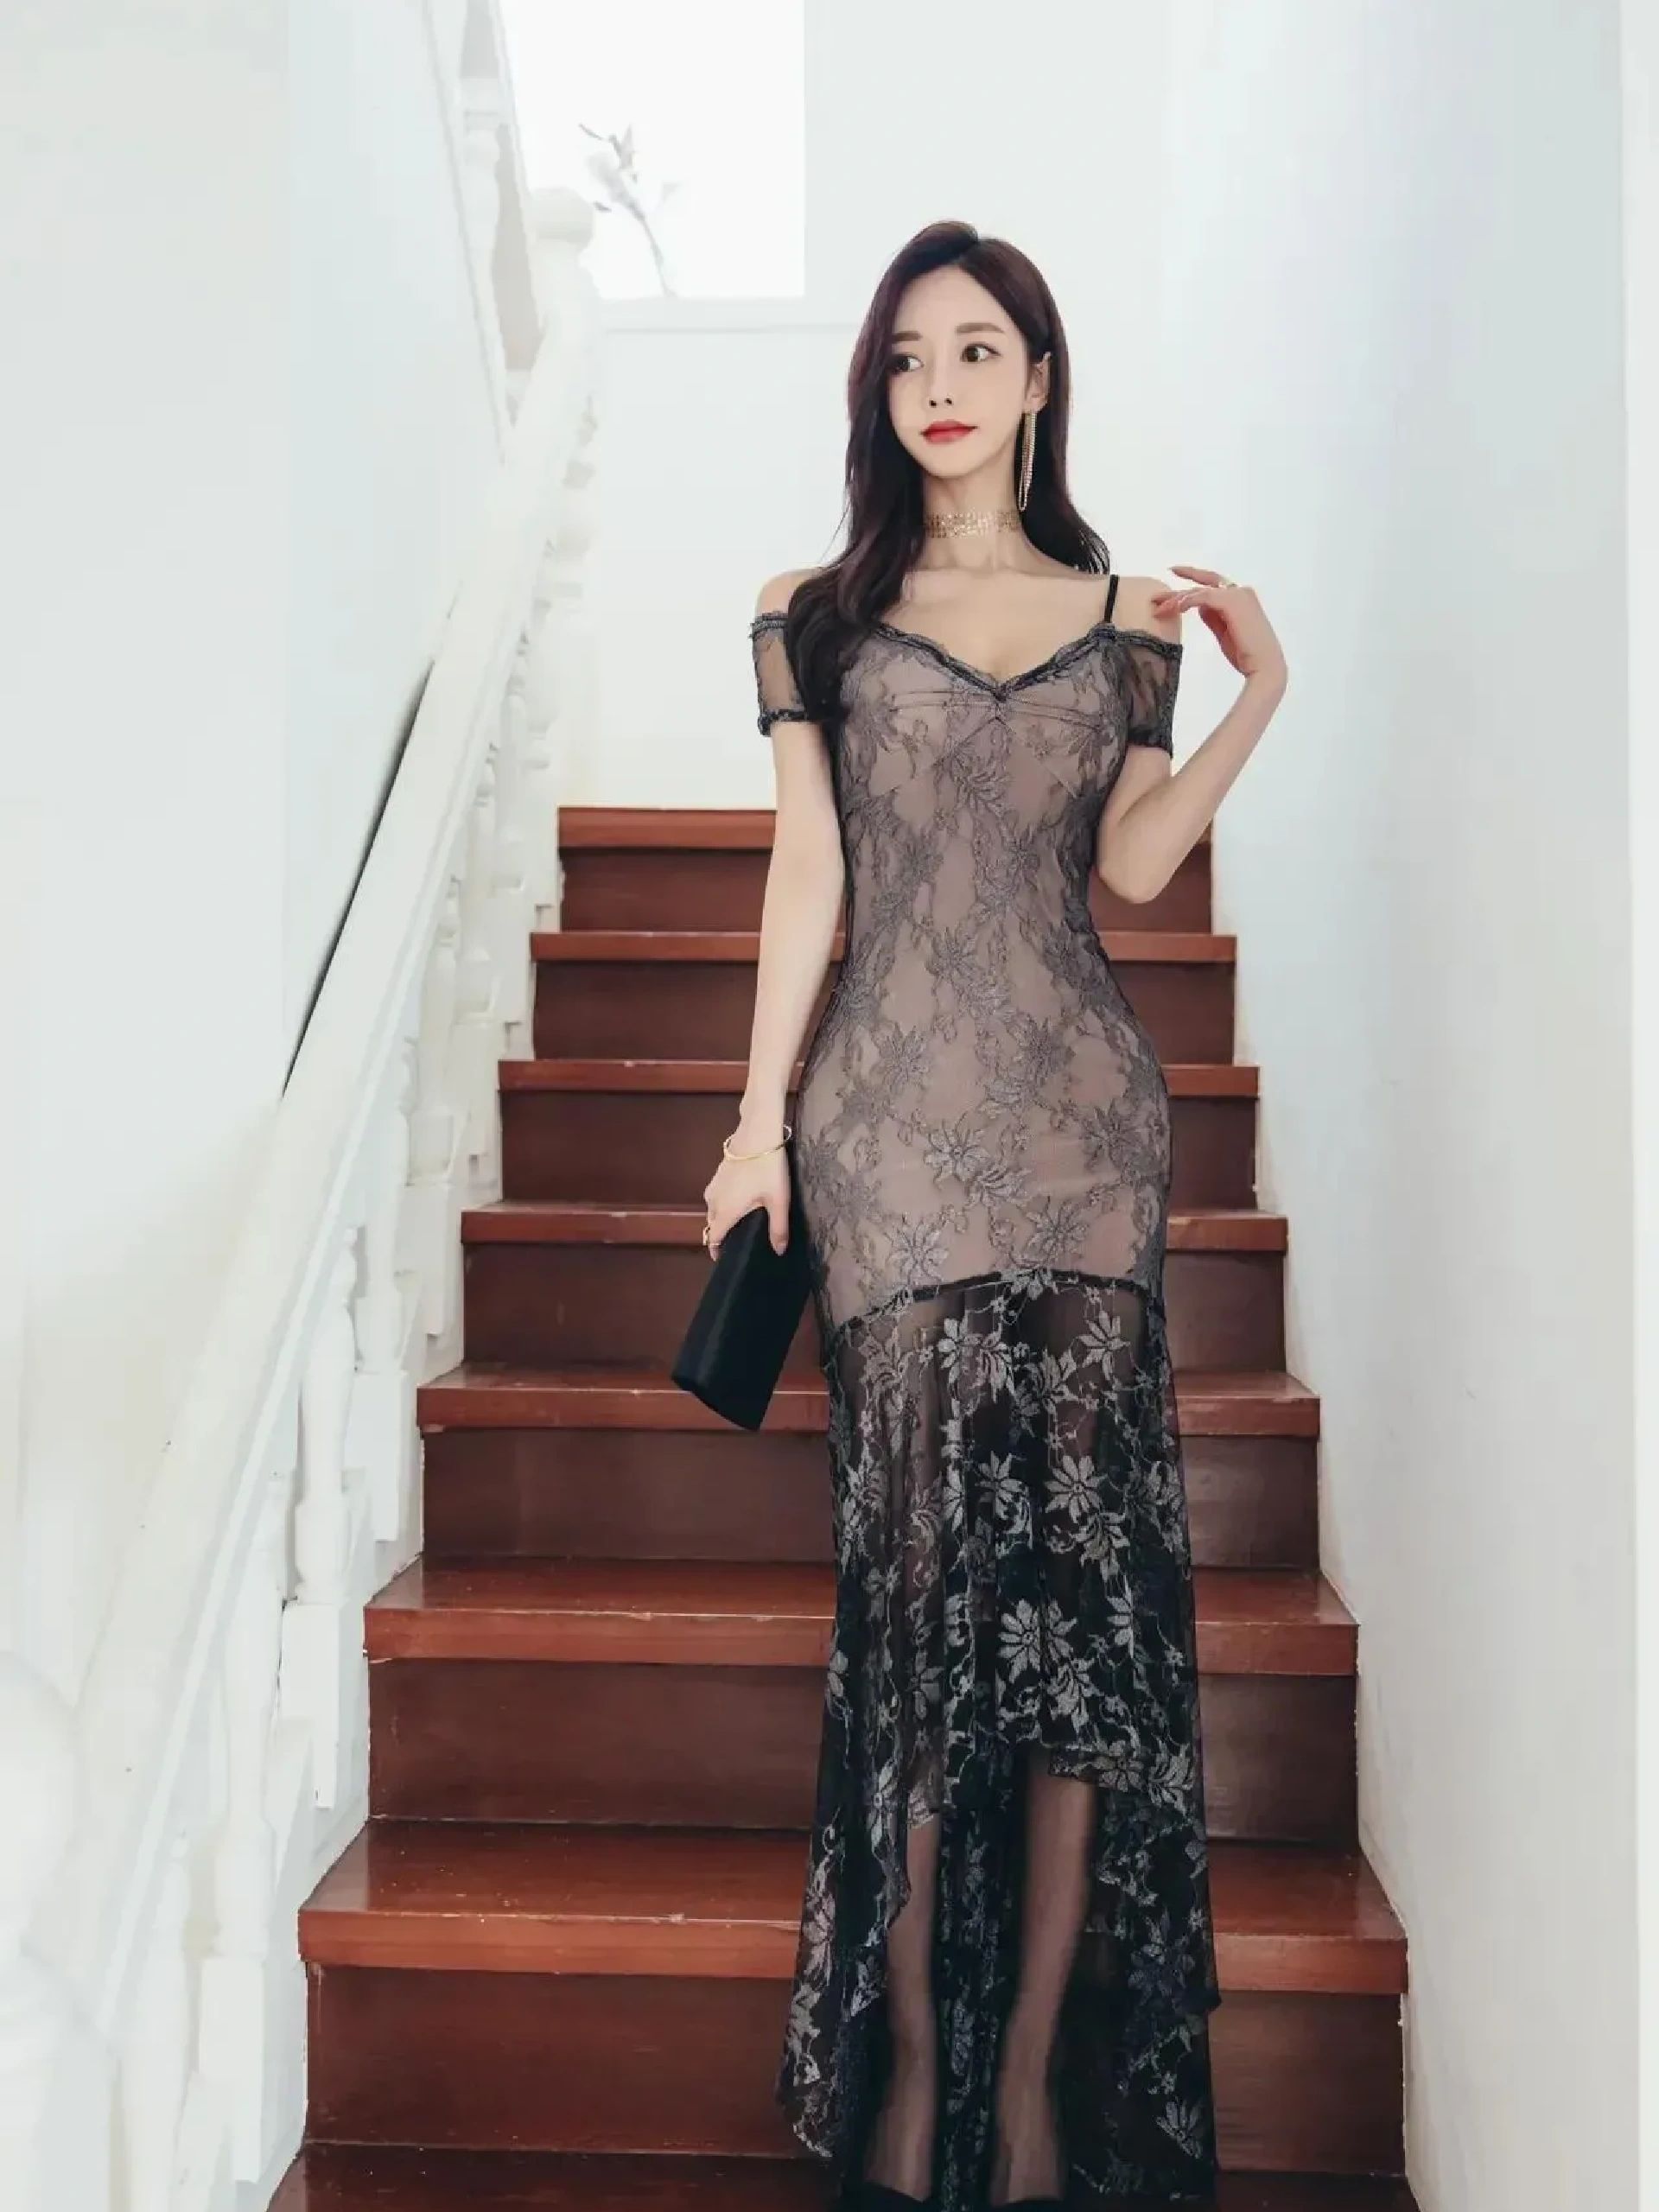 韩国美女孙允珠性感吊带黑色蕾丝黑纱裙楼梯间优雅写真图片图片